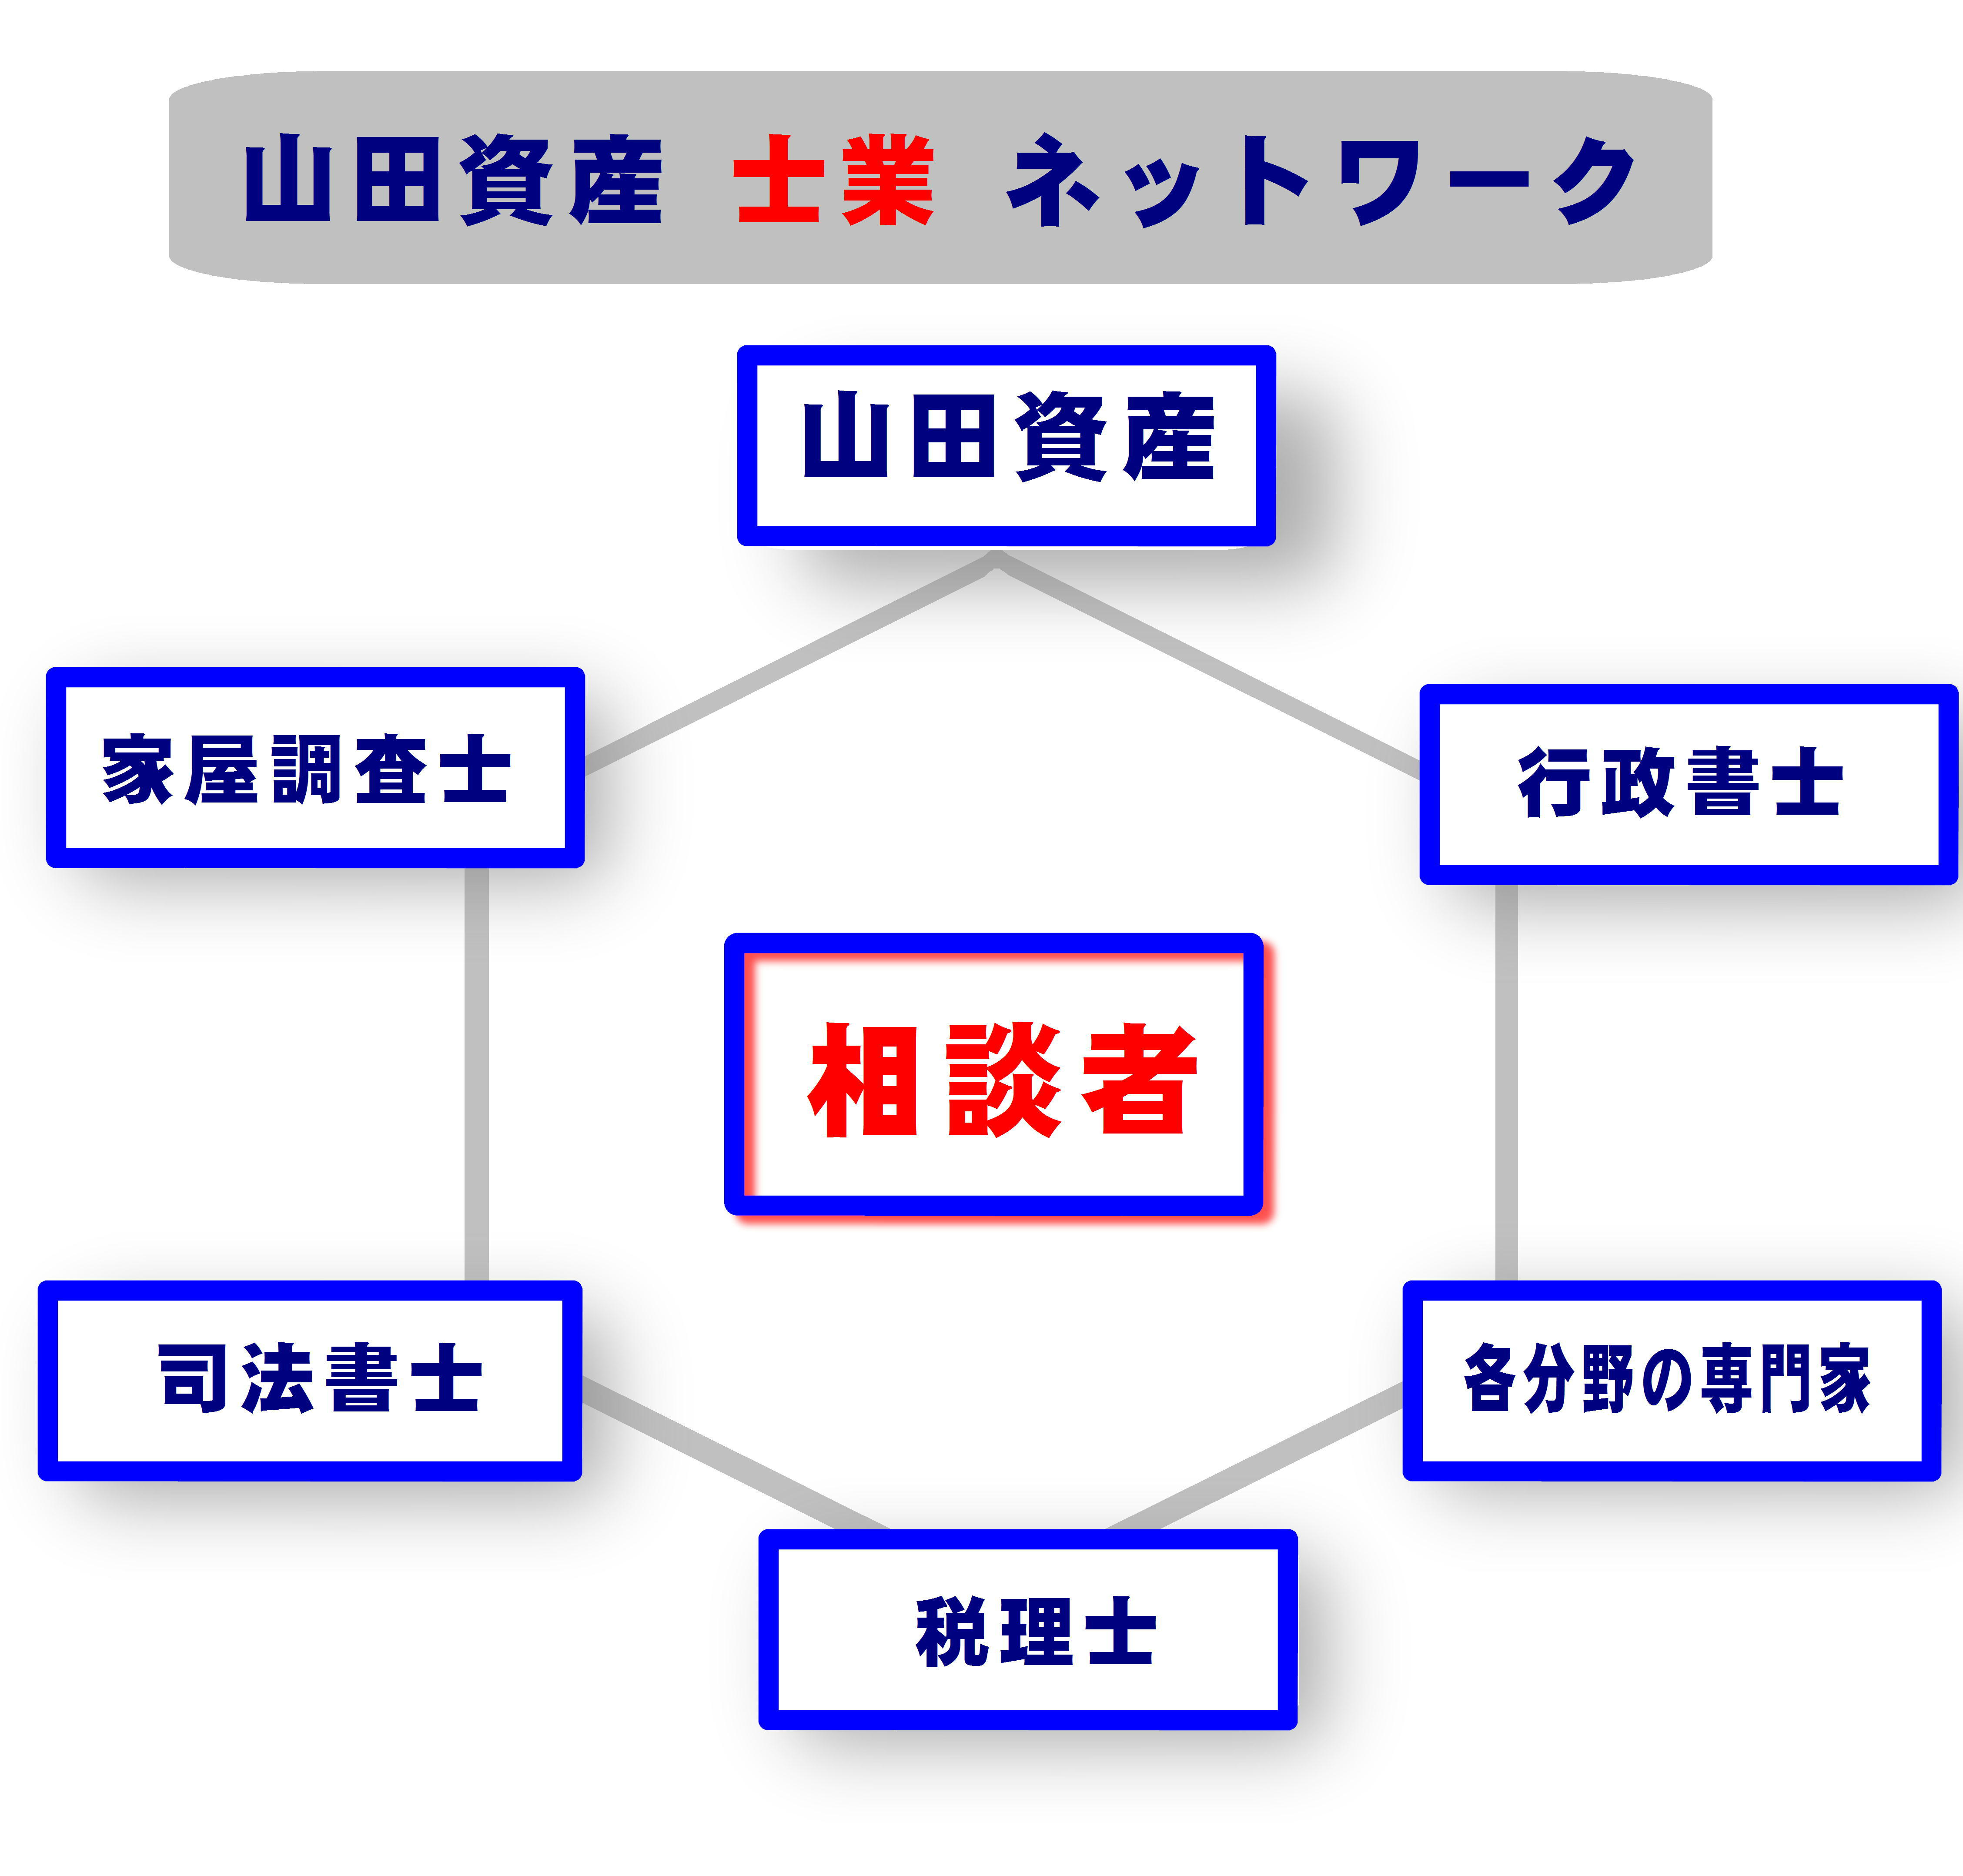 山田資産の最強士業ネットワーク